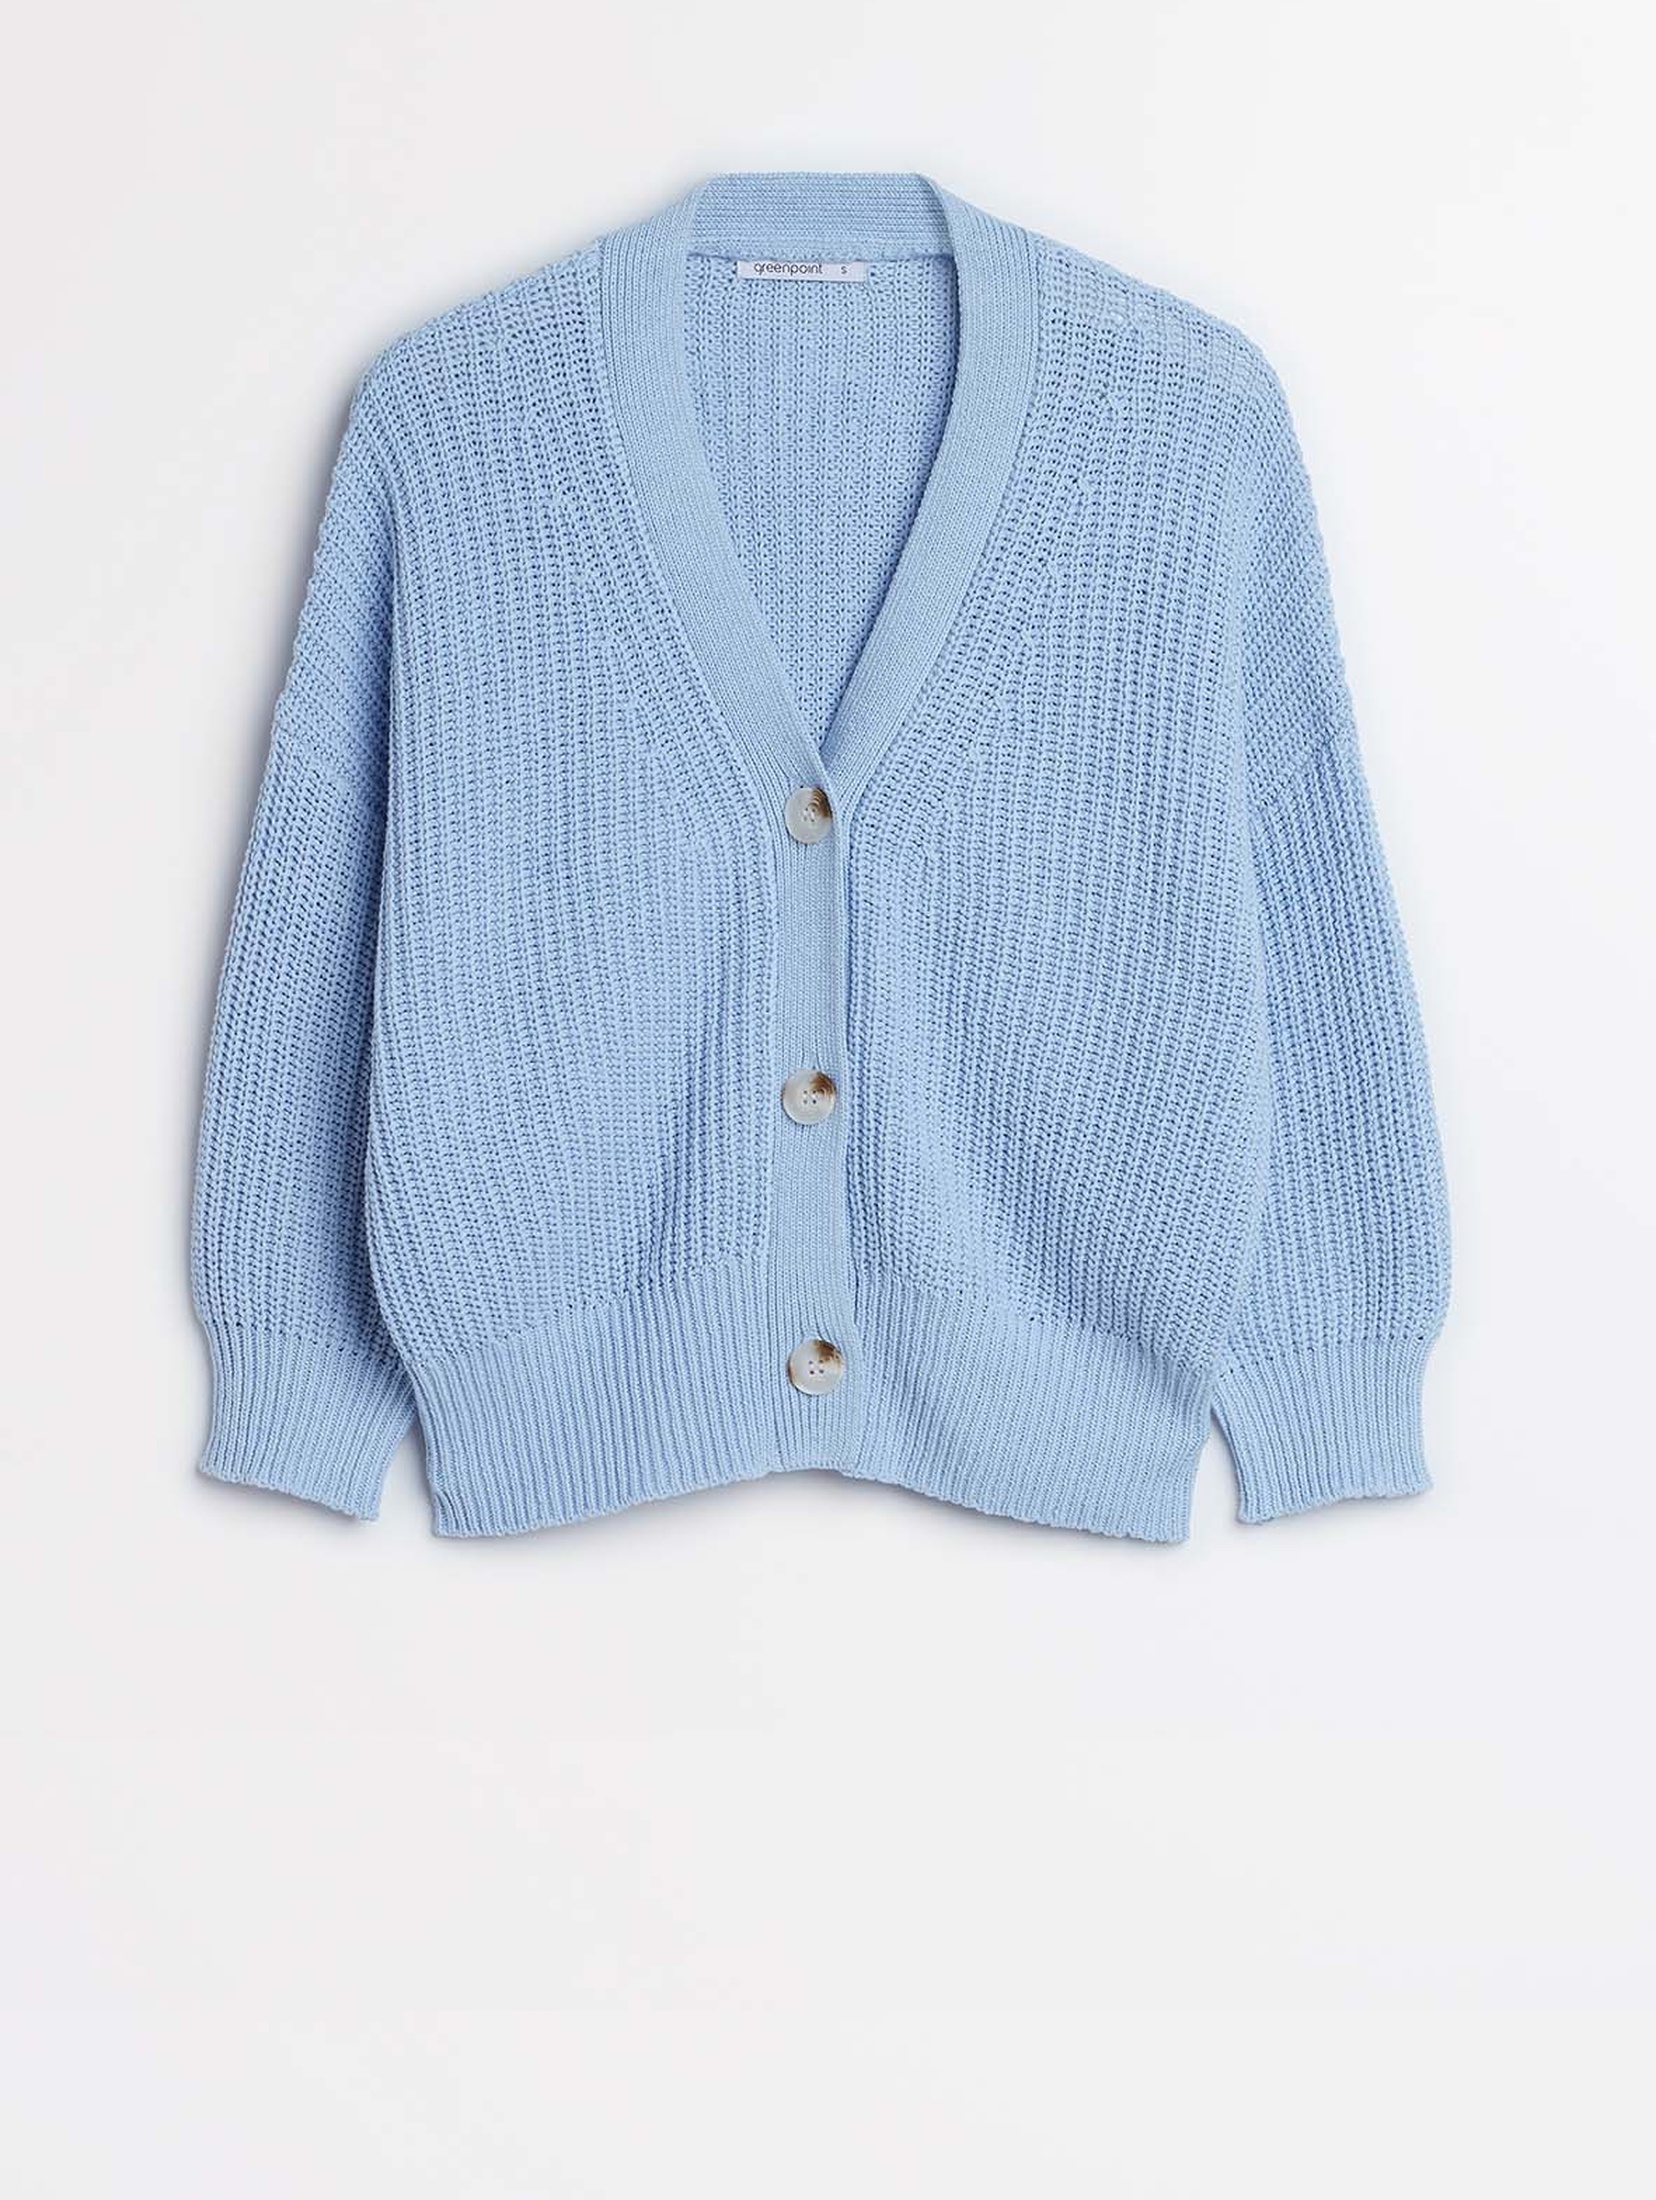 Niebieski rozpinany sweter damski z bawełny